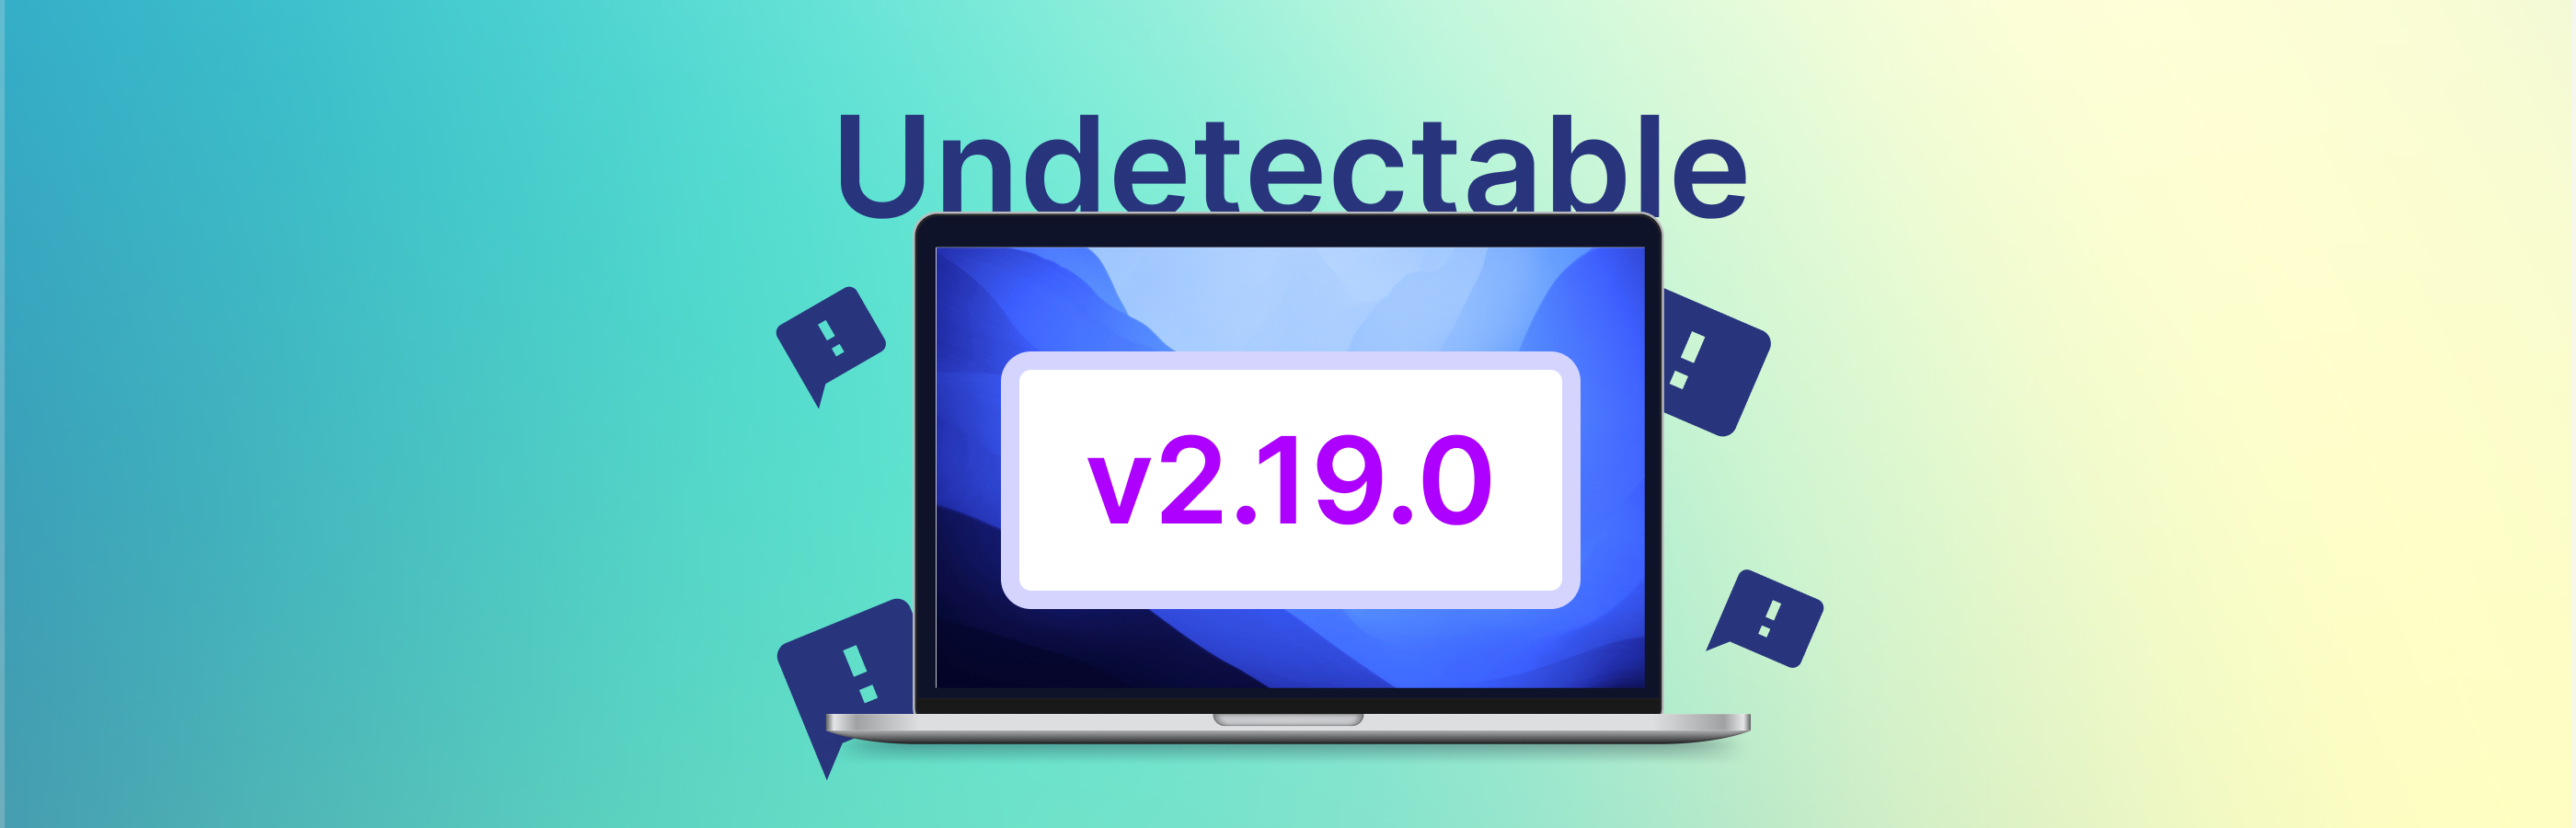 Обратная связь и новые функции - Undetectable browser 2.19